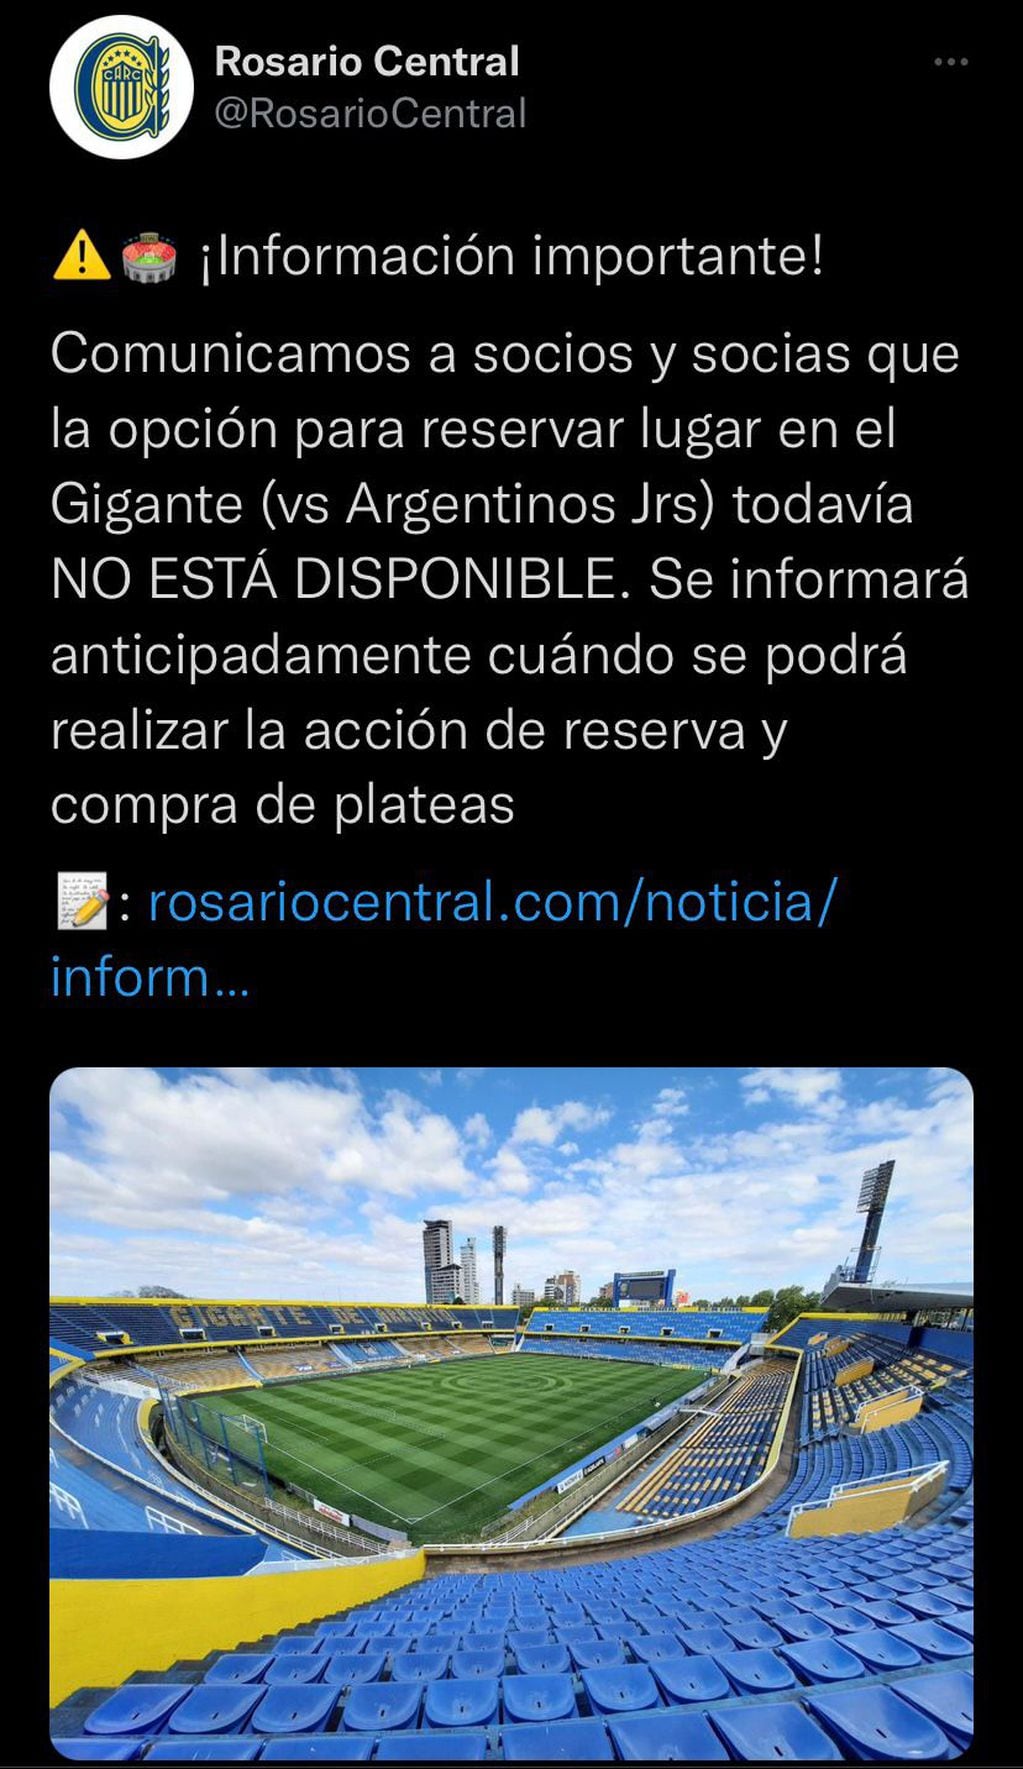 El comunicado que publicó Rosario Central en Twitter para avisar que aún no está disponible la sede virtual para reservar las entradas. (@RosarioCentral)